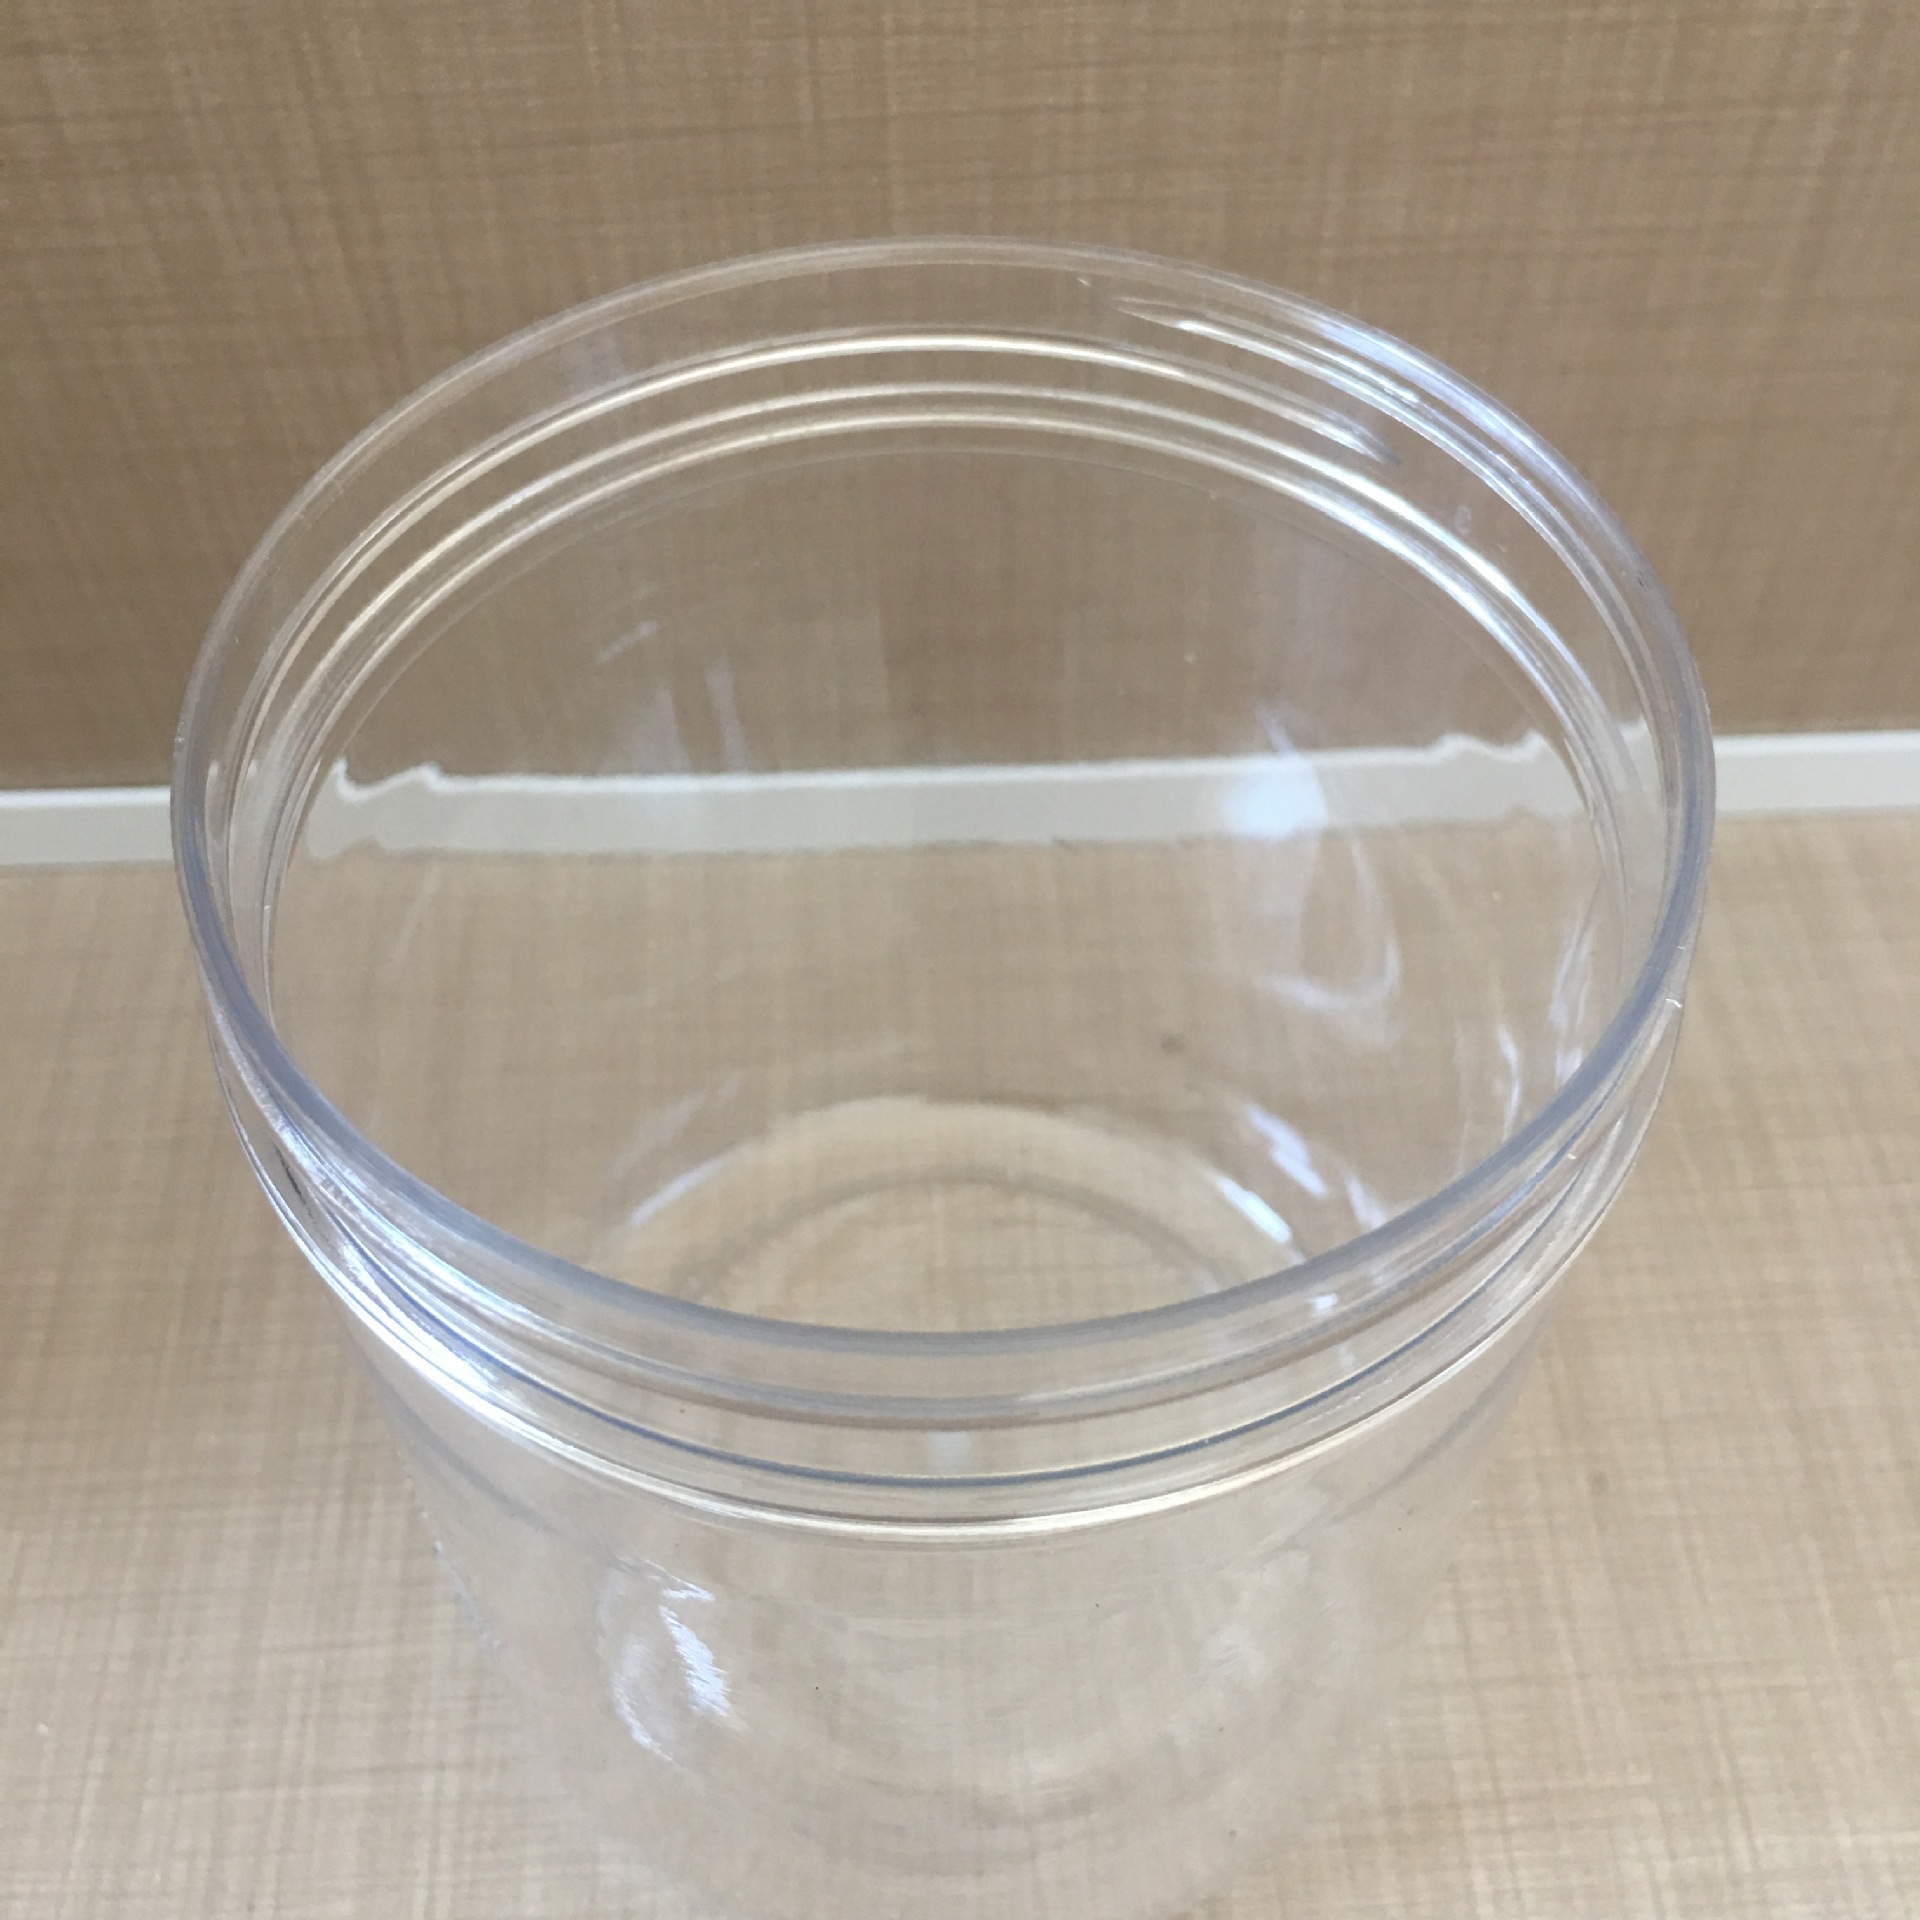 厂家直销pet塑料罐食品塑料罐药用塑料罐包装罐现货供应价格优惠示例图8